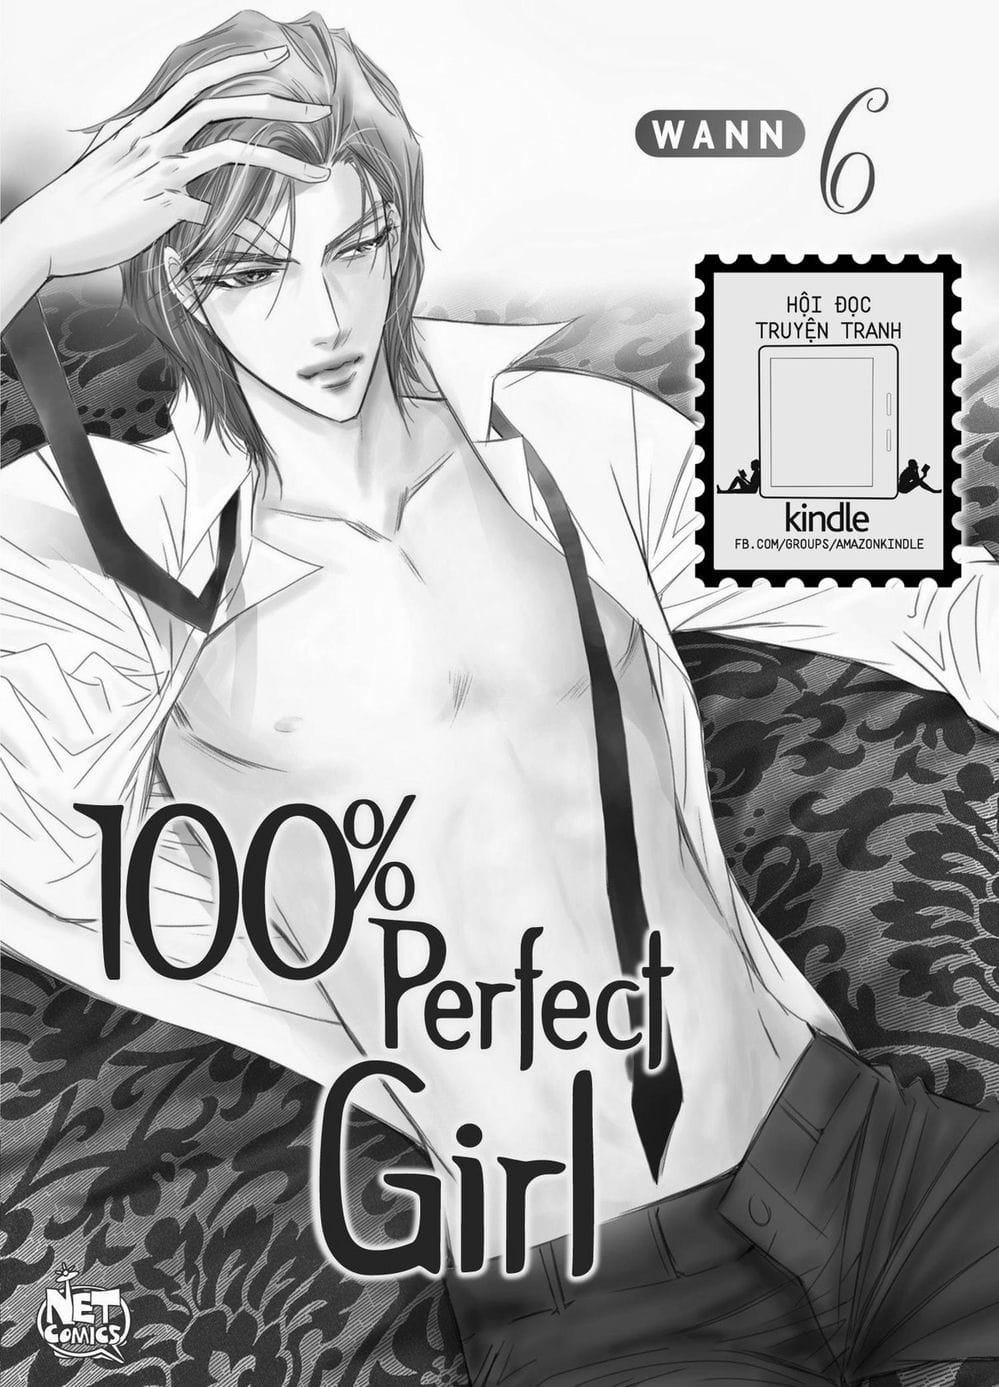 Truyện Tranh Cô Gái Hoàn Hảo - 100% Perfect Girl trang 2037